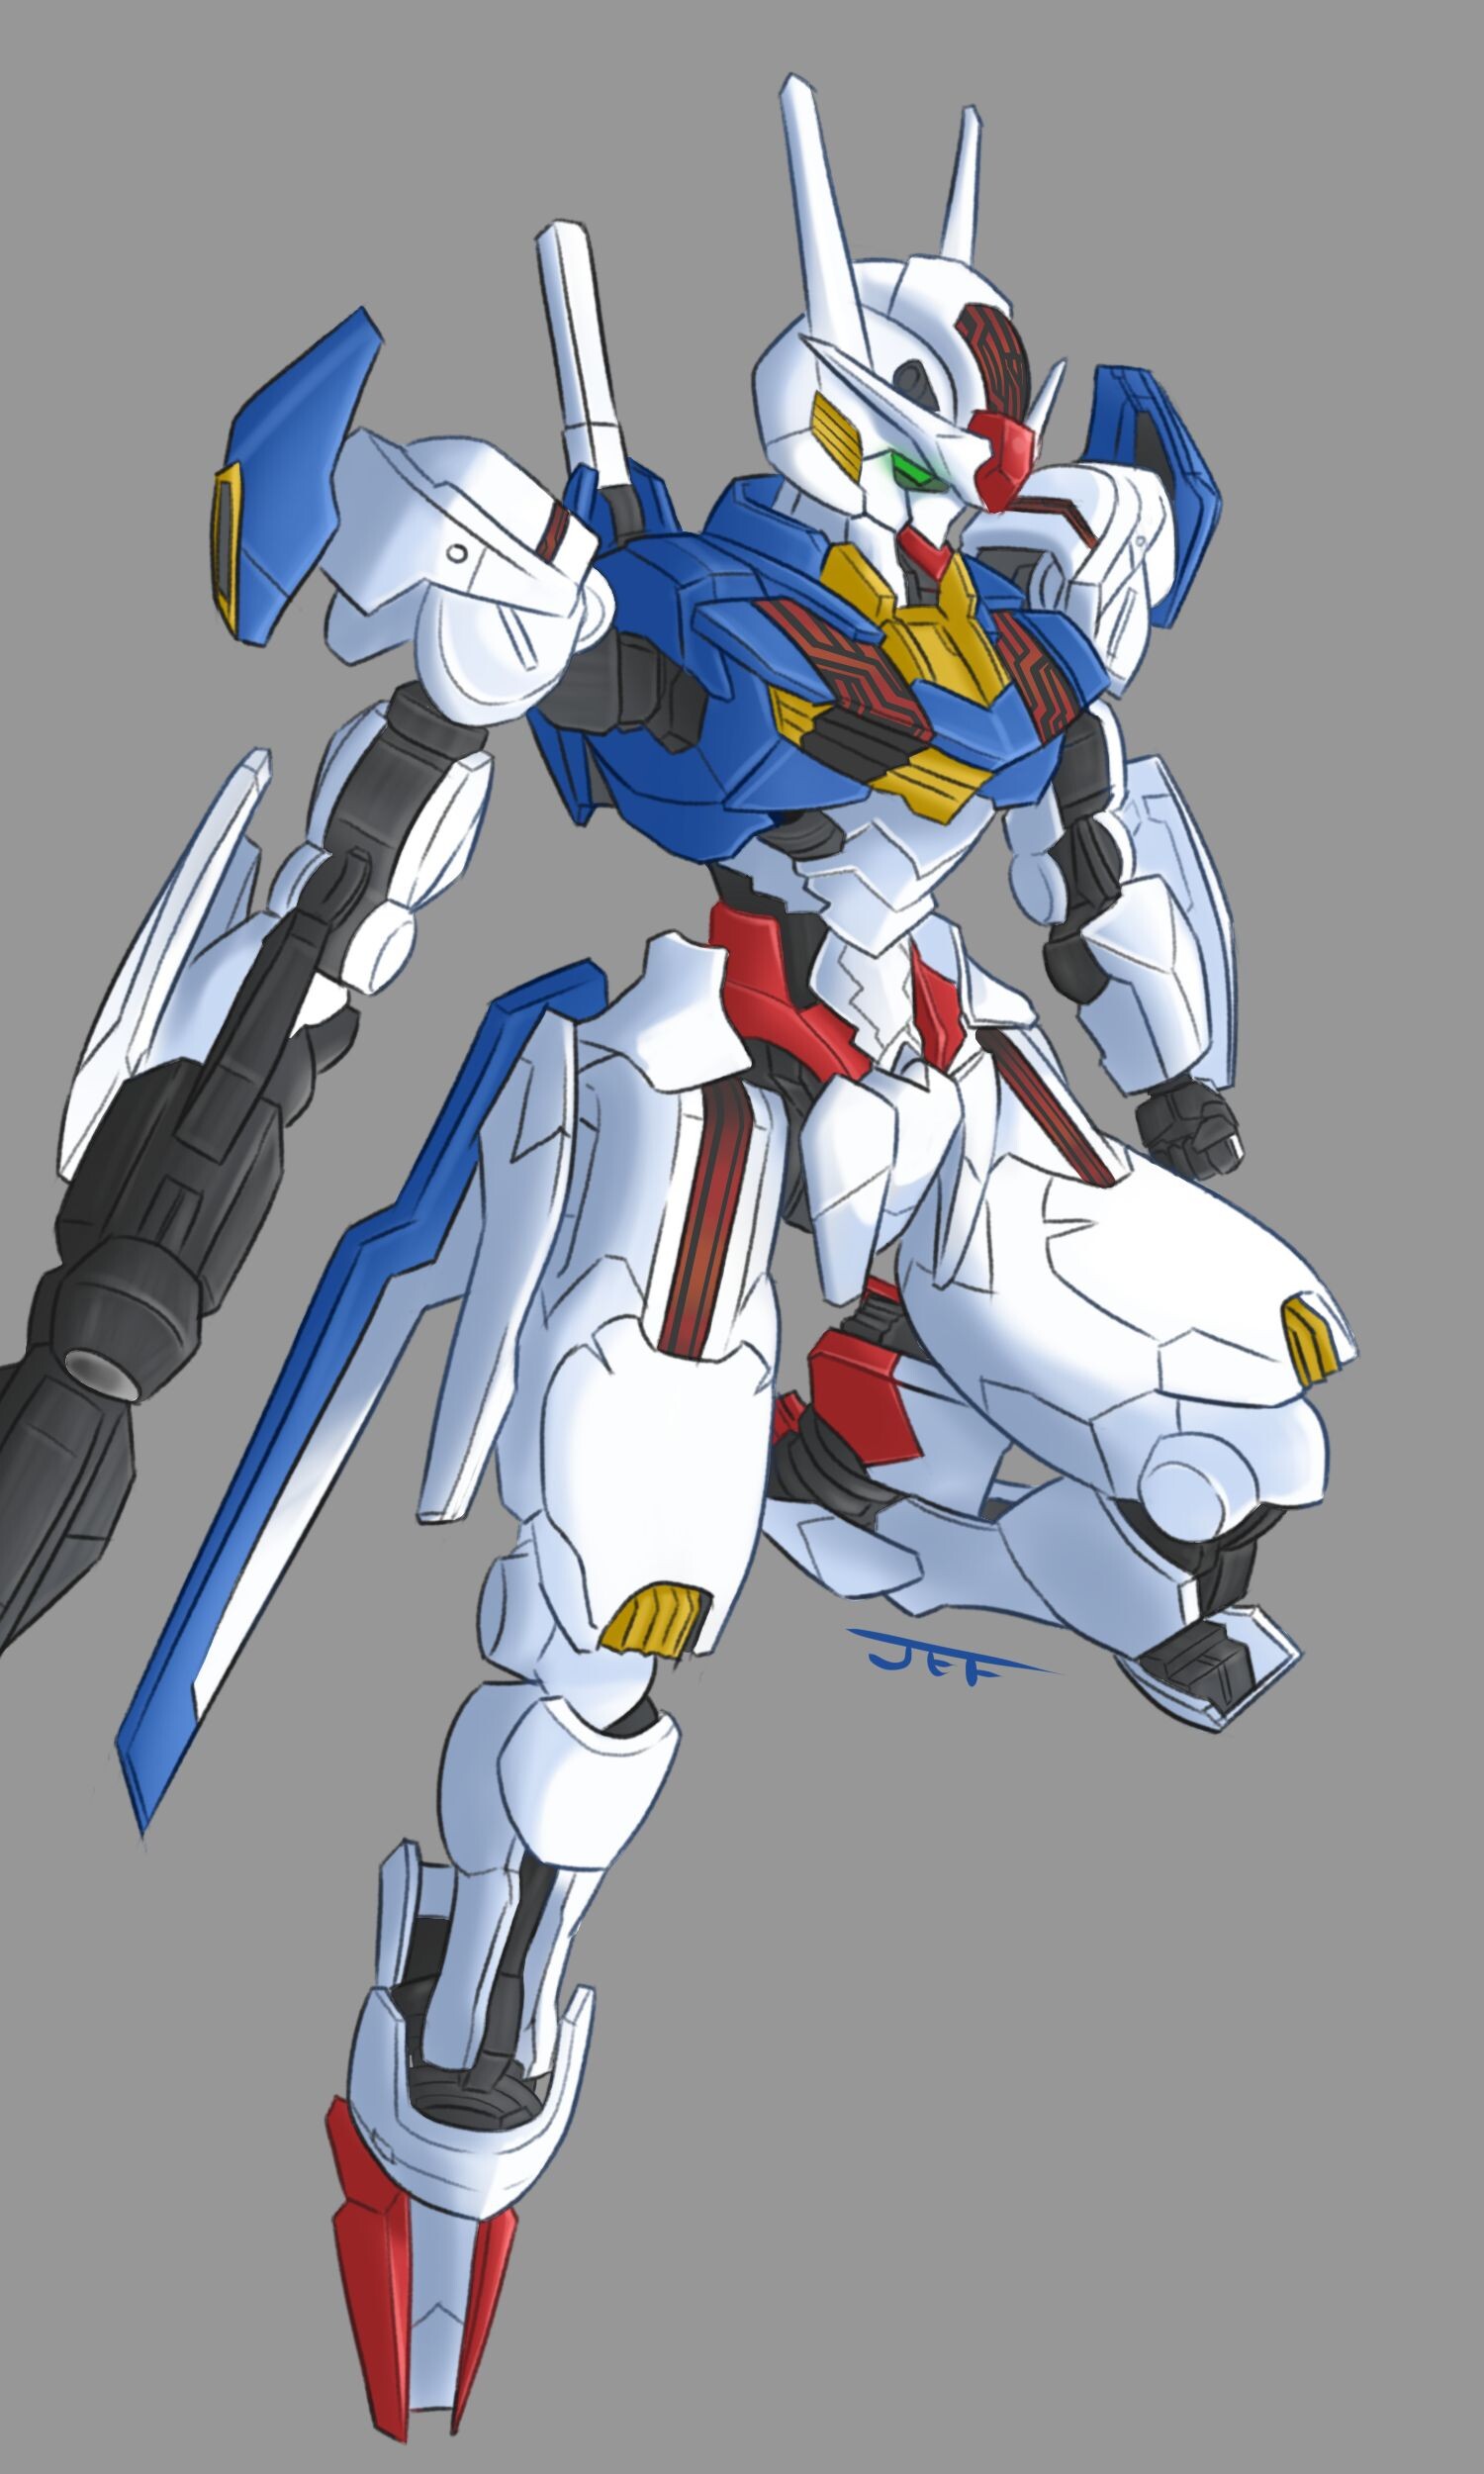 ArtStation - Gundam aerial rebuild